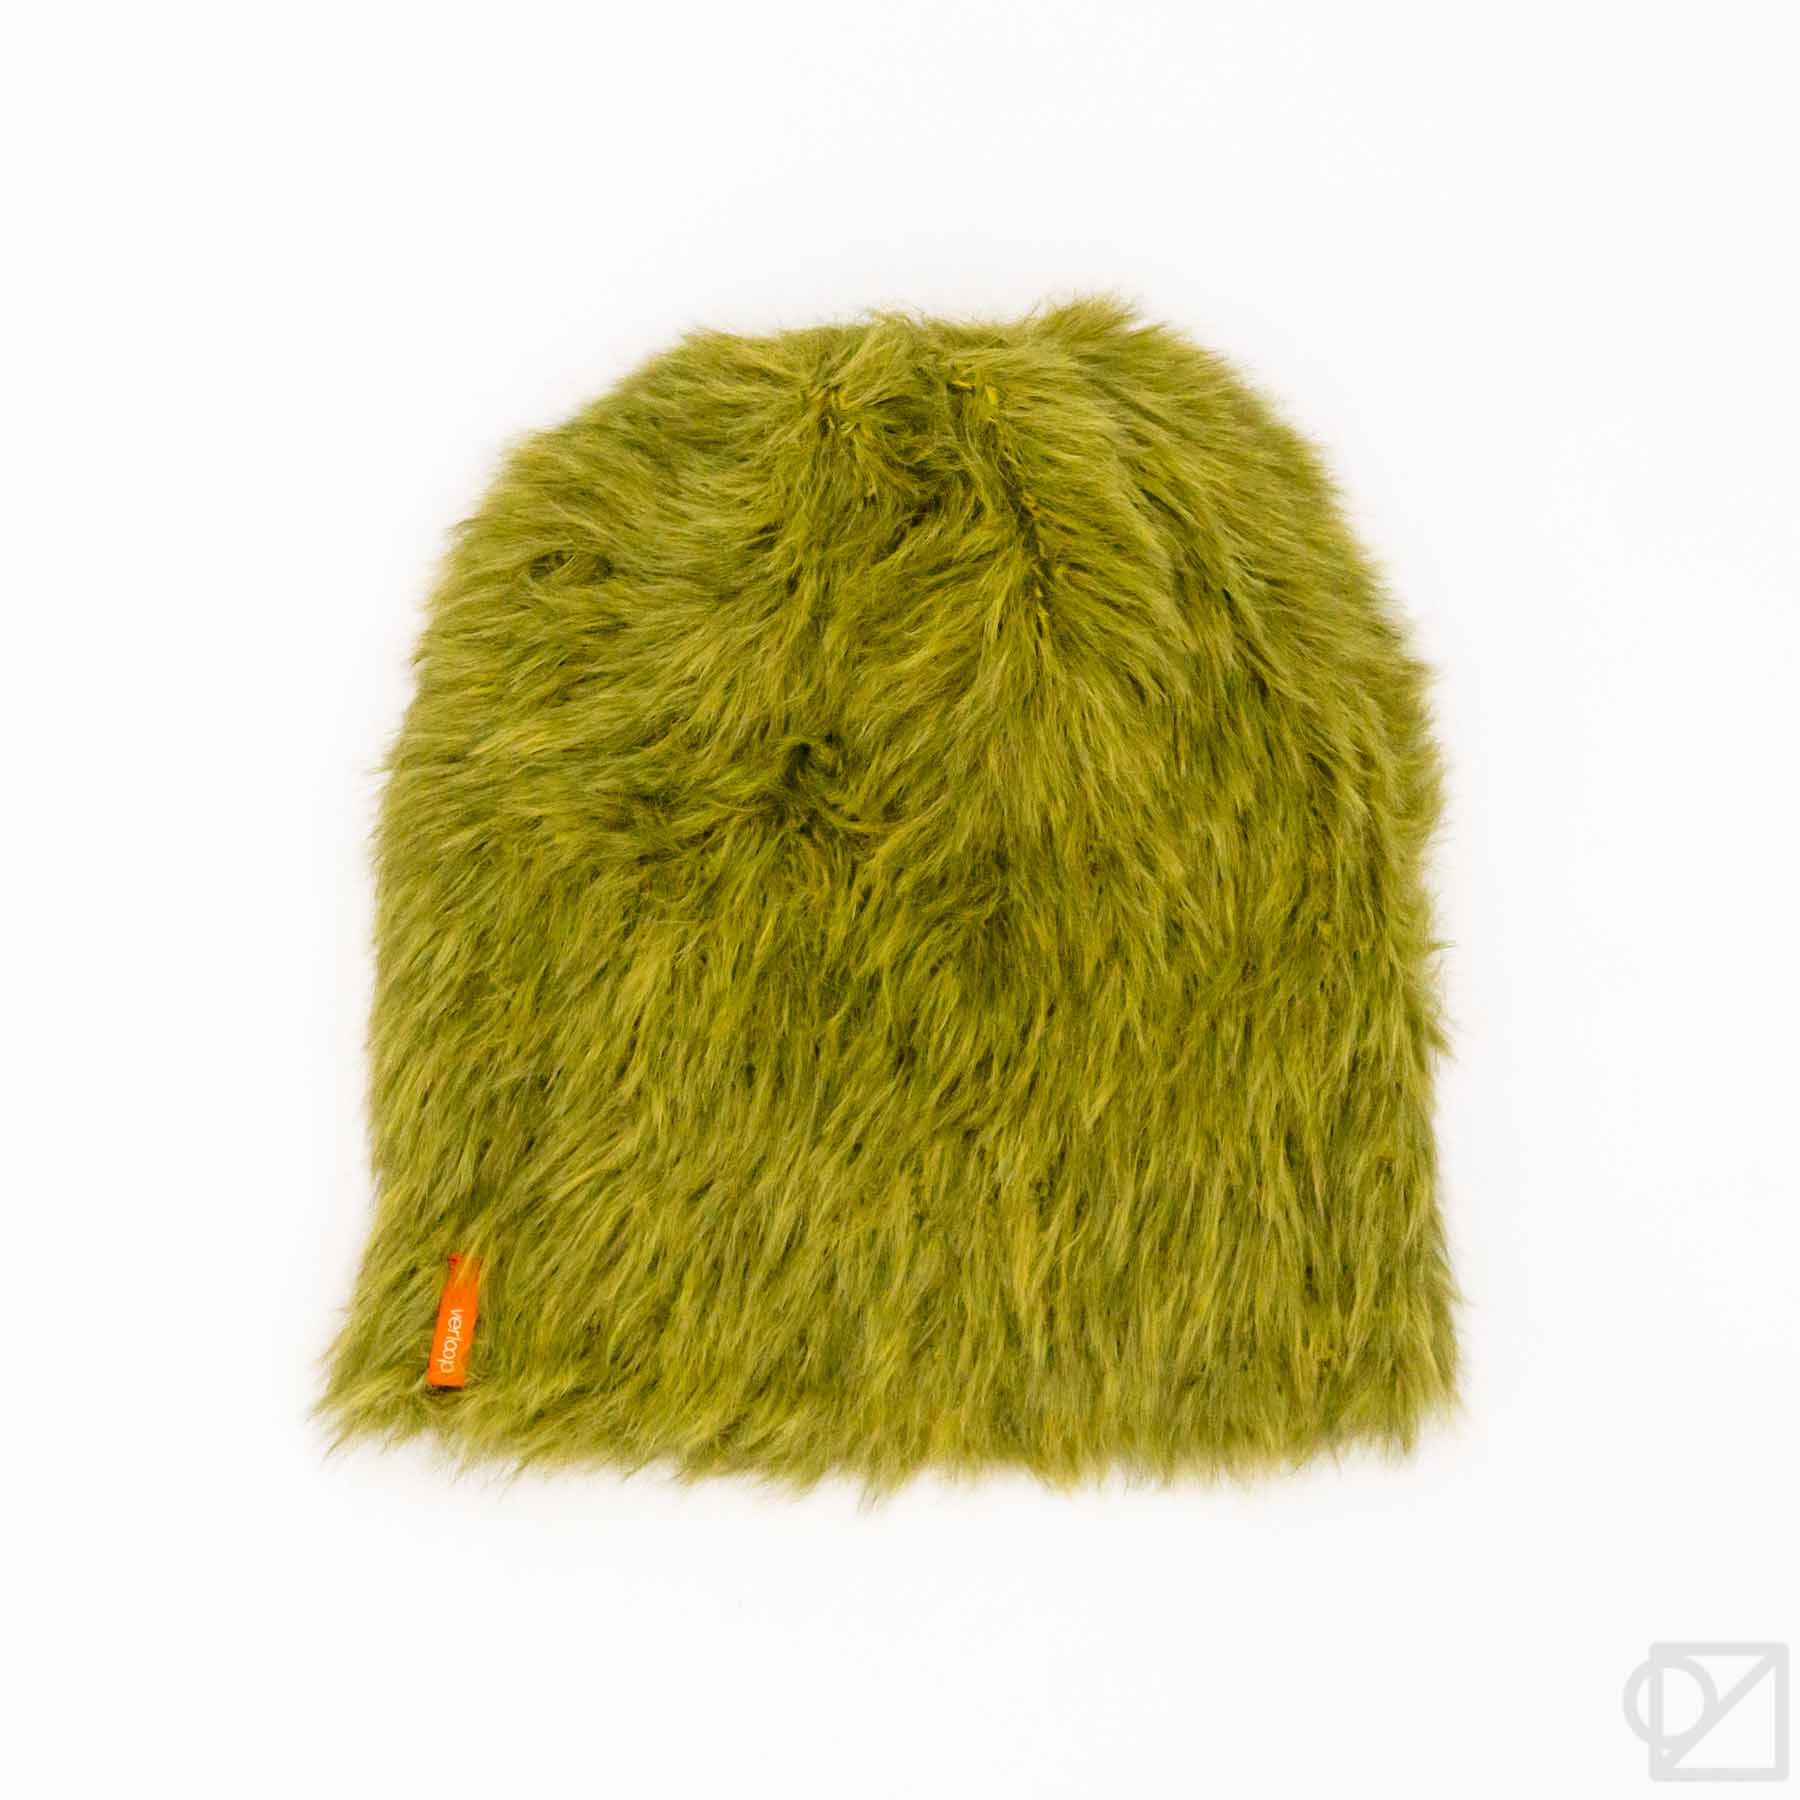 Verloop Faux Fur Fuzzy Knit Beanie Hat Vegan Furry Periwinkle